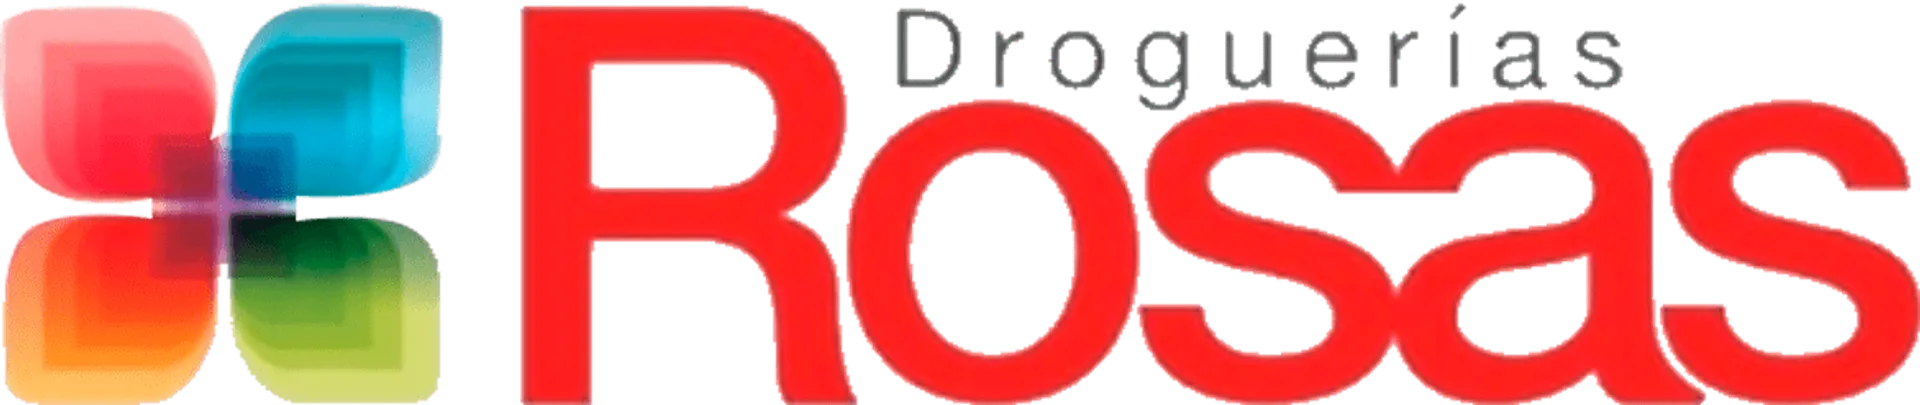 DROGUERÍA ROSAS logo de catálogo